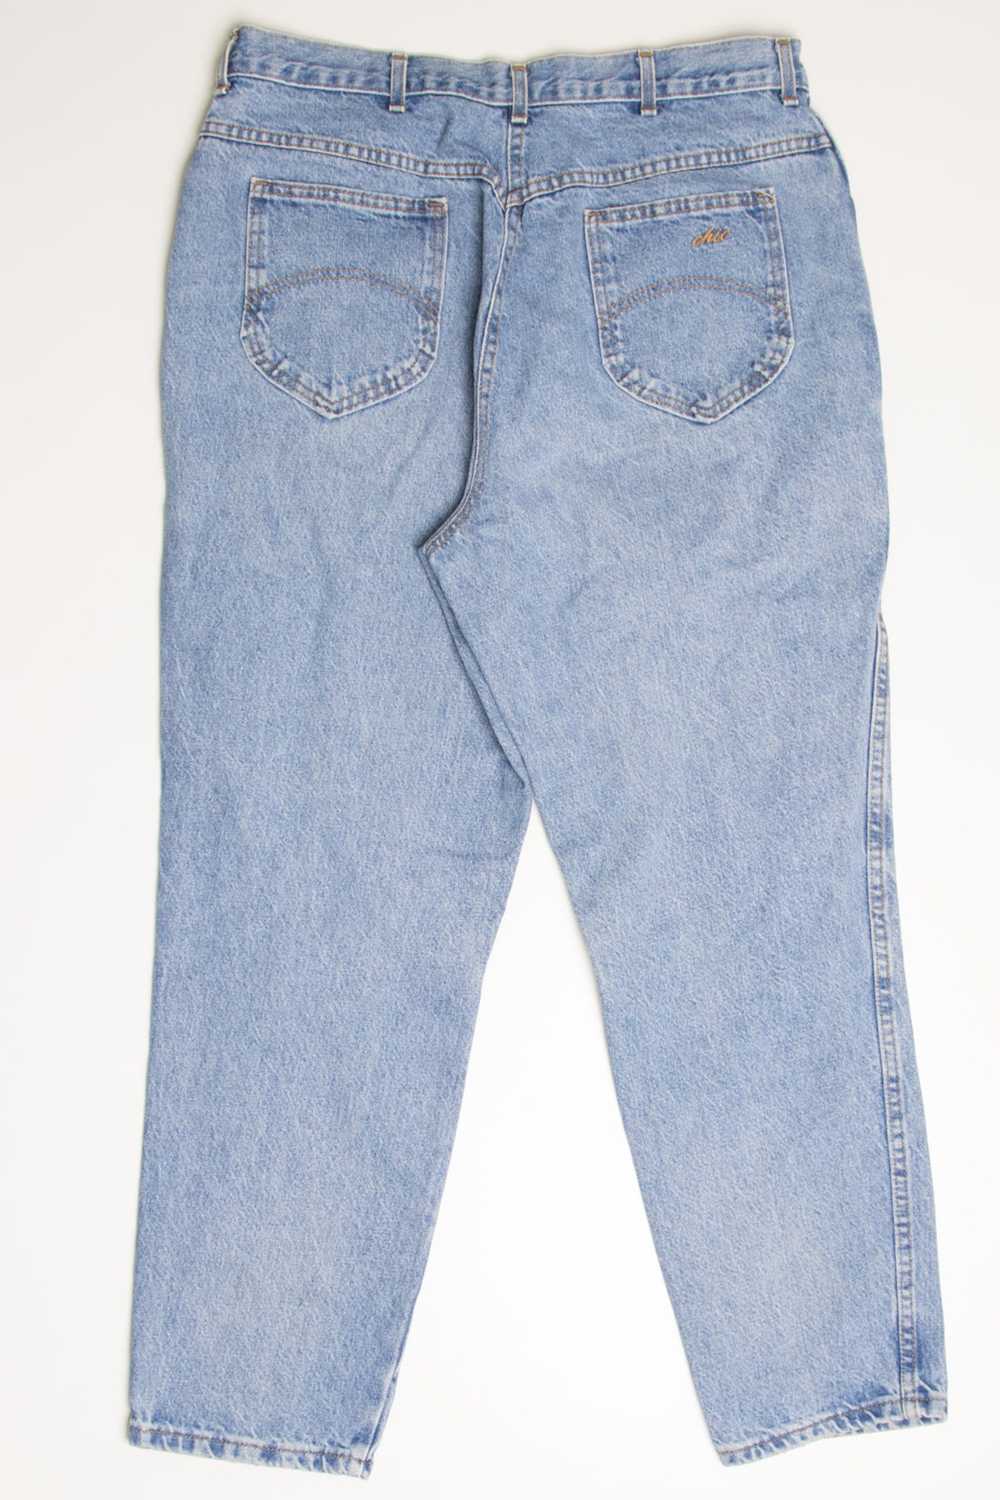 Vintage Chic Denim Jeans (sz. 20W) - image 1